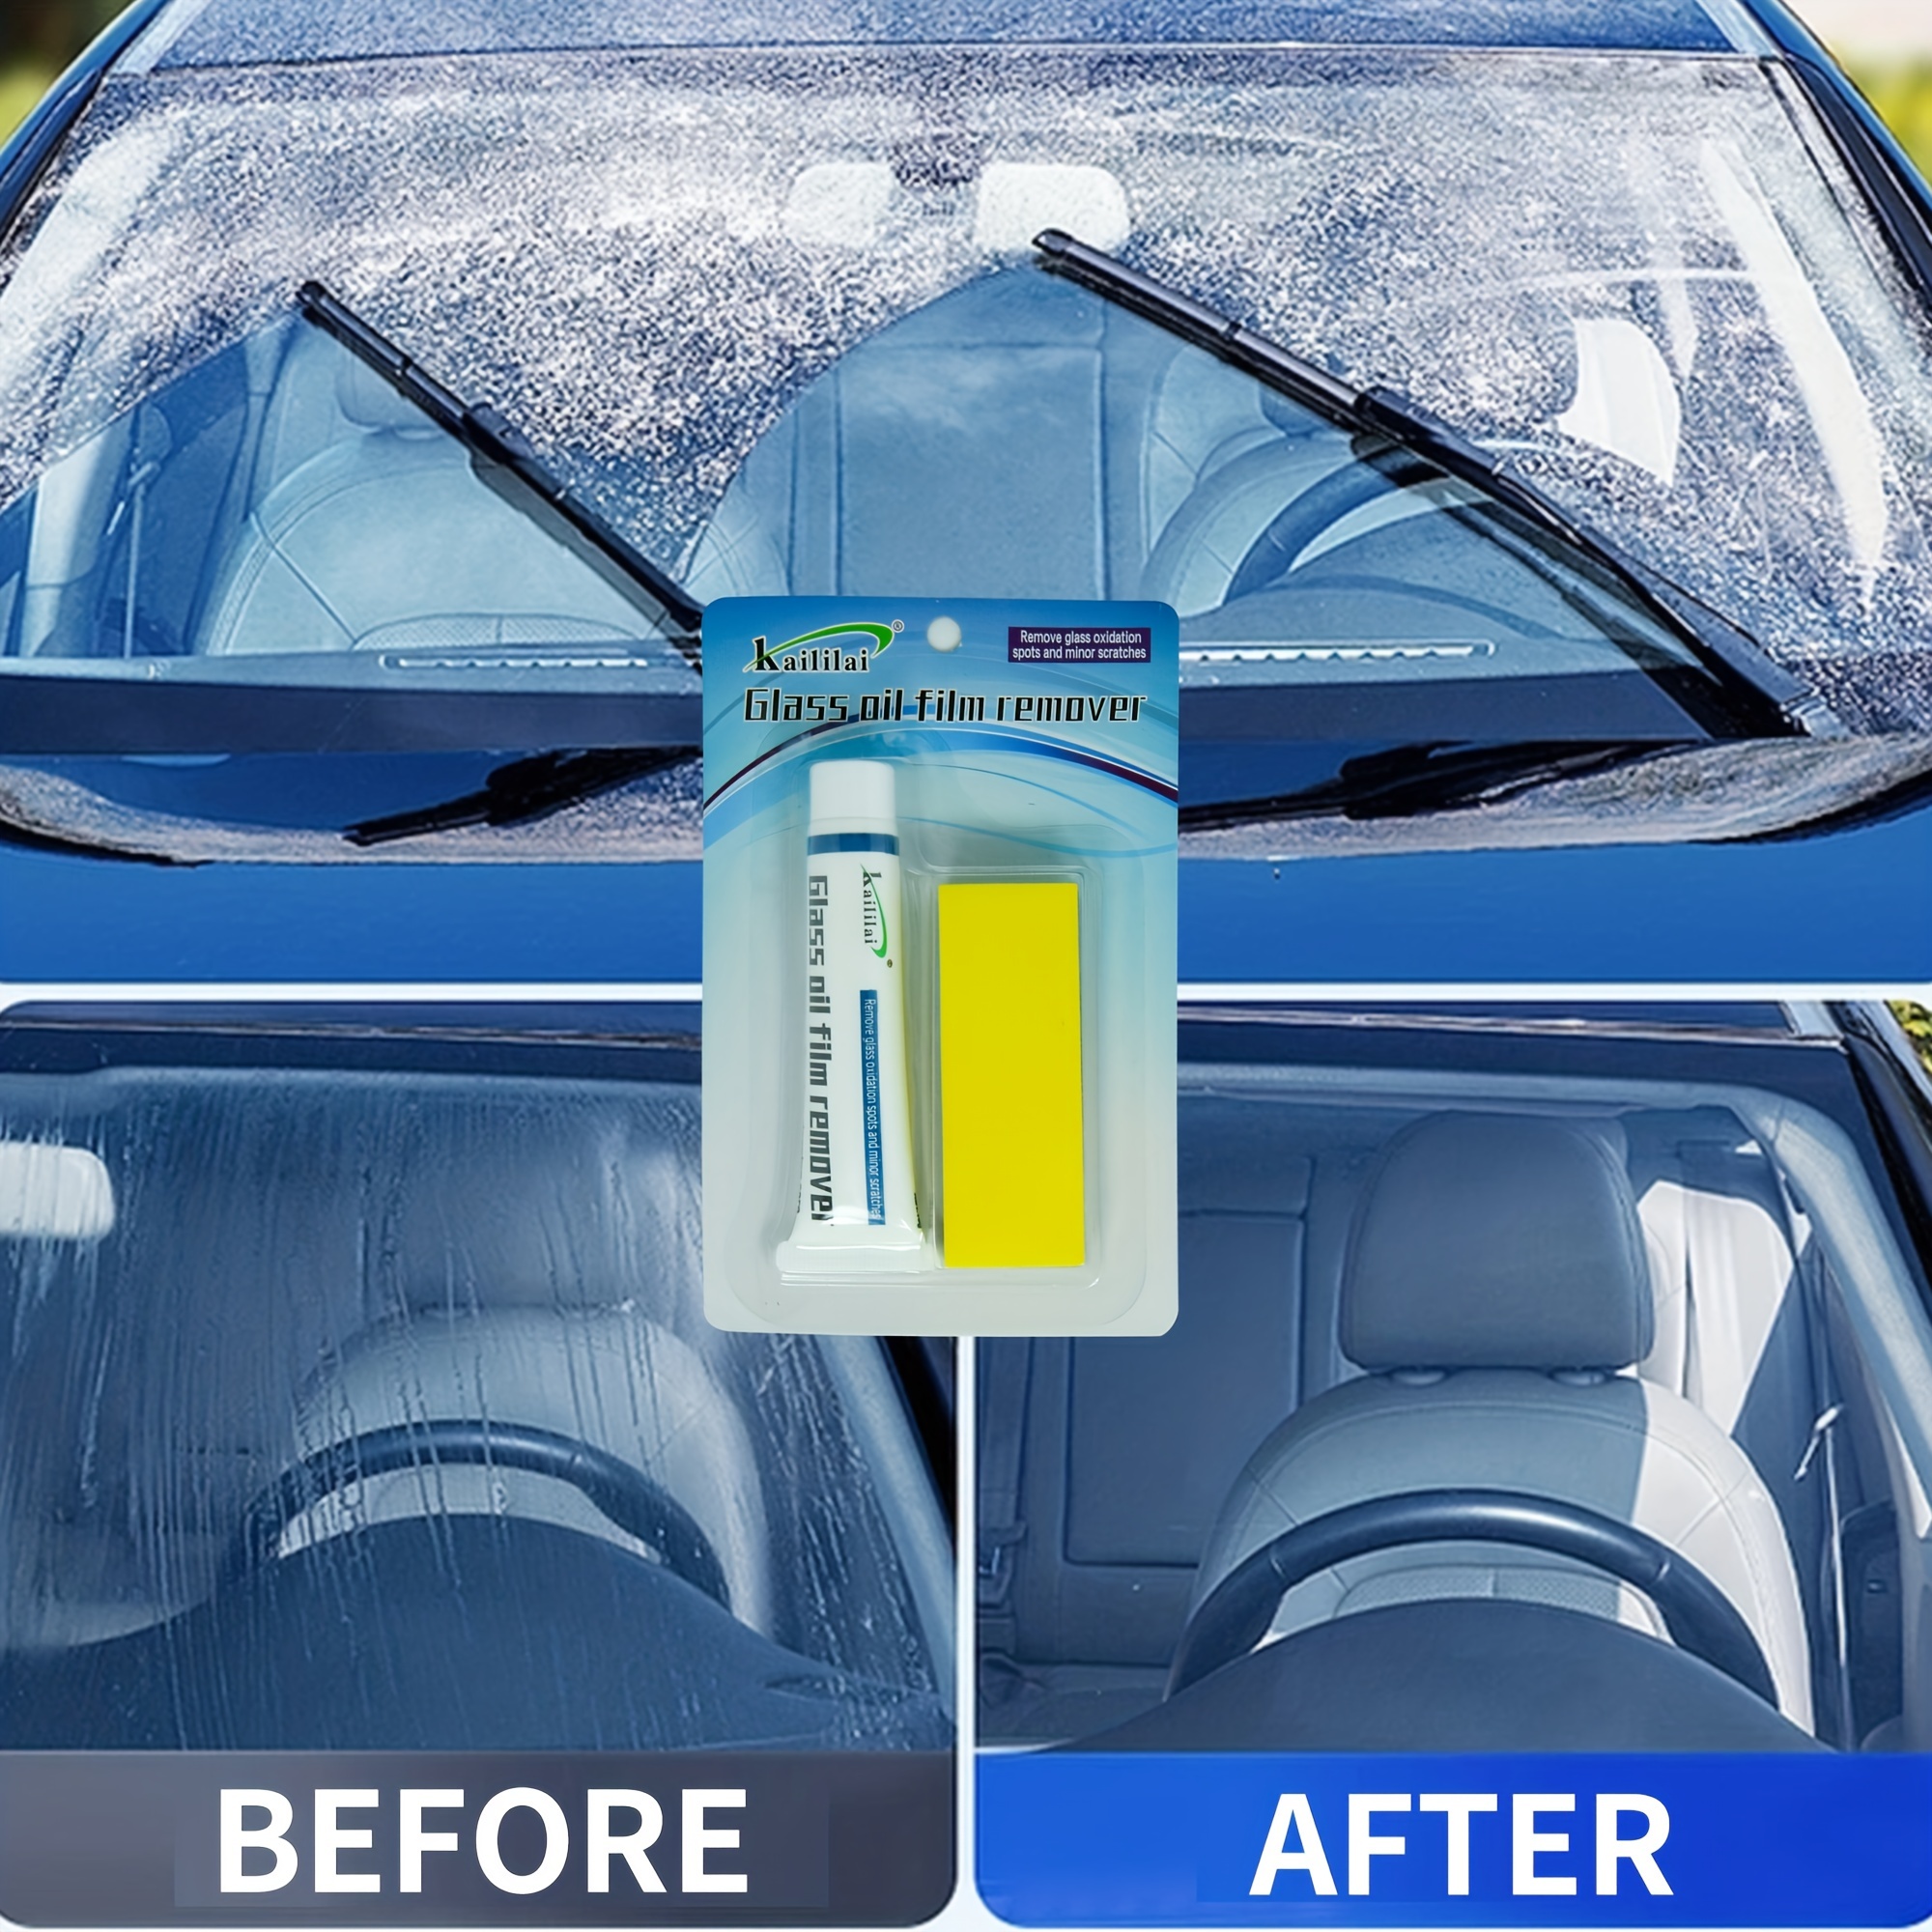 50ml Car Glass Oil Film Removing Anti-fog Cleaner Paste Glass Film Coating  Agent